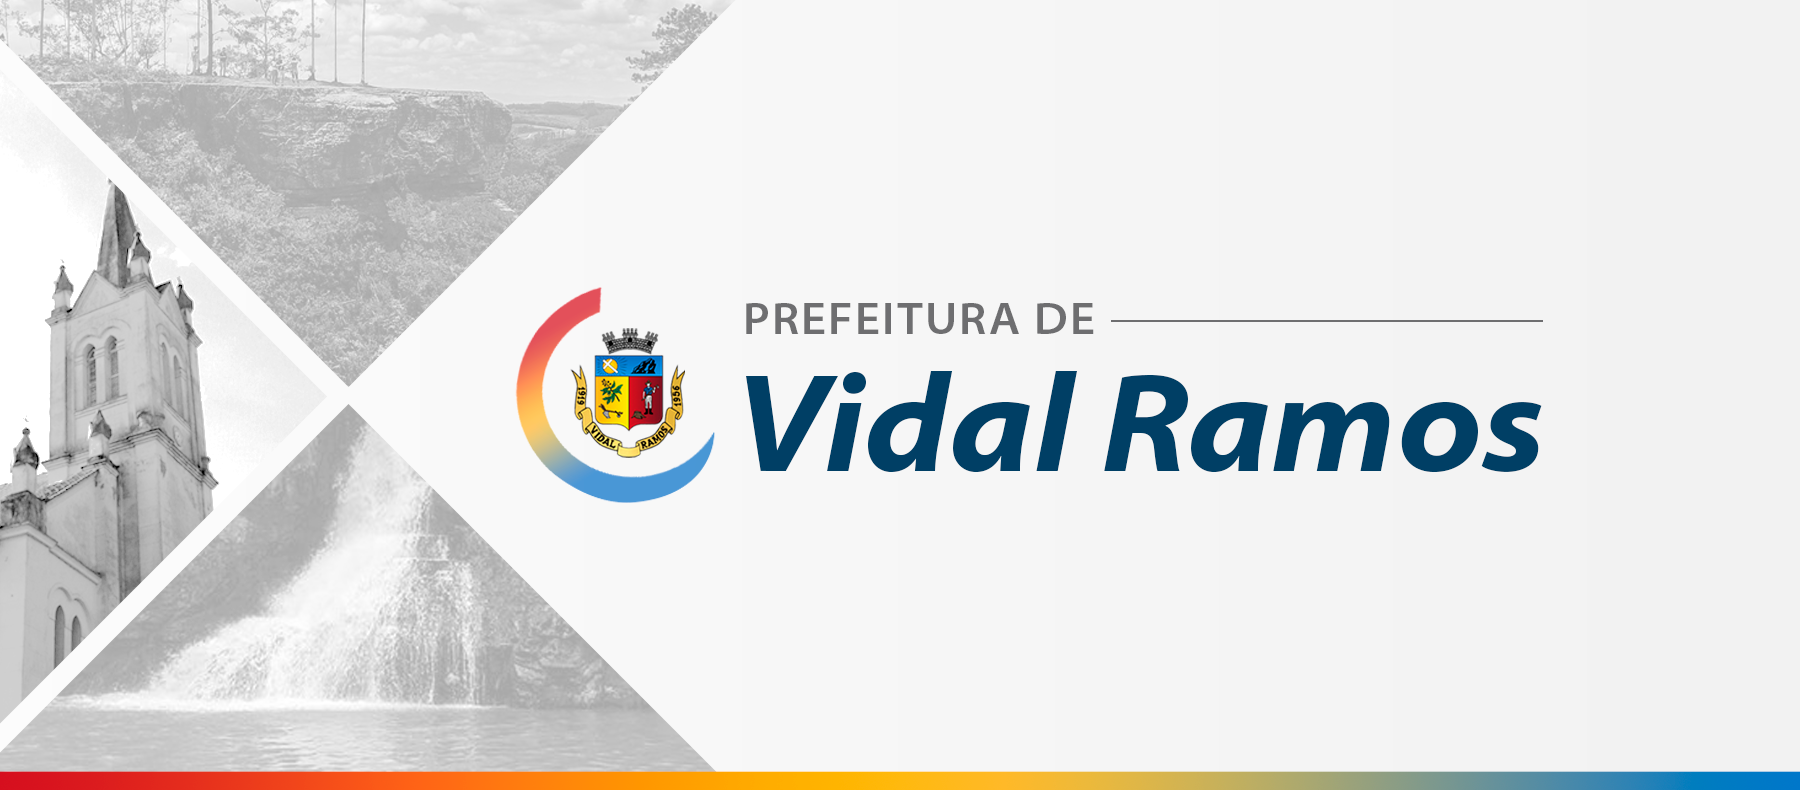 Projeto de lei que regulamenta loteamentos em Vidal Ramos está em análise na Câmara de Vereadores